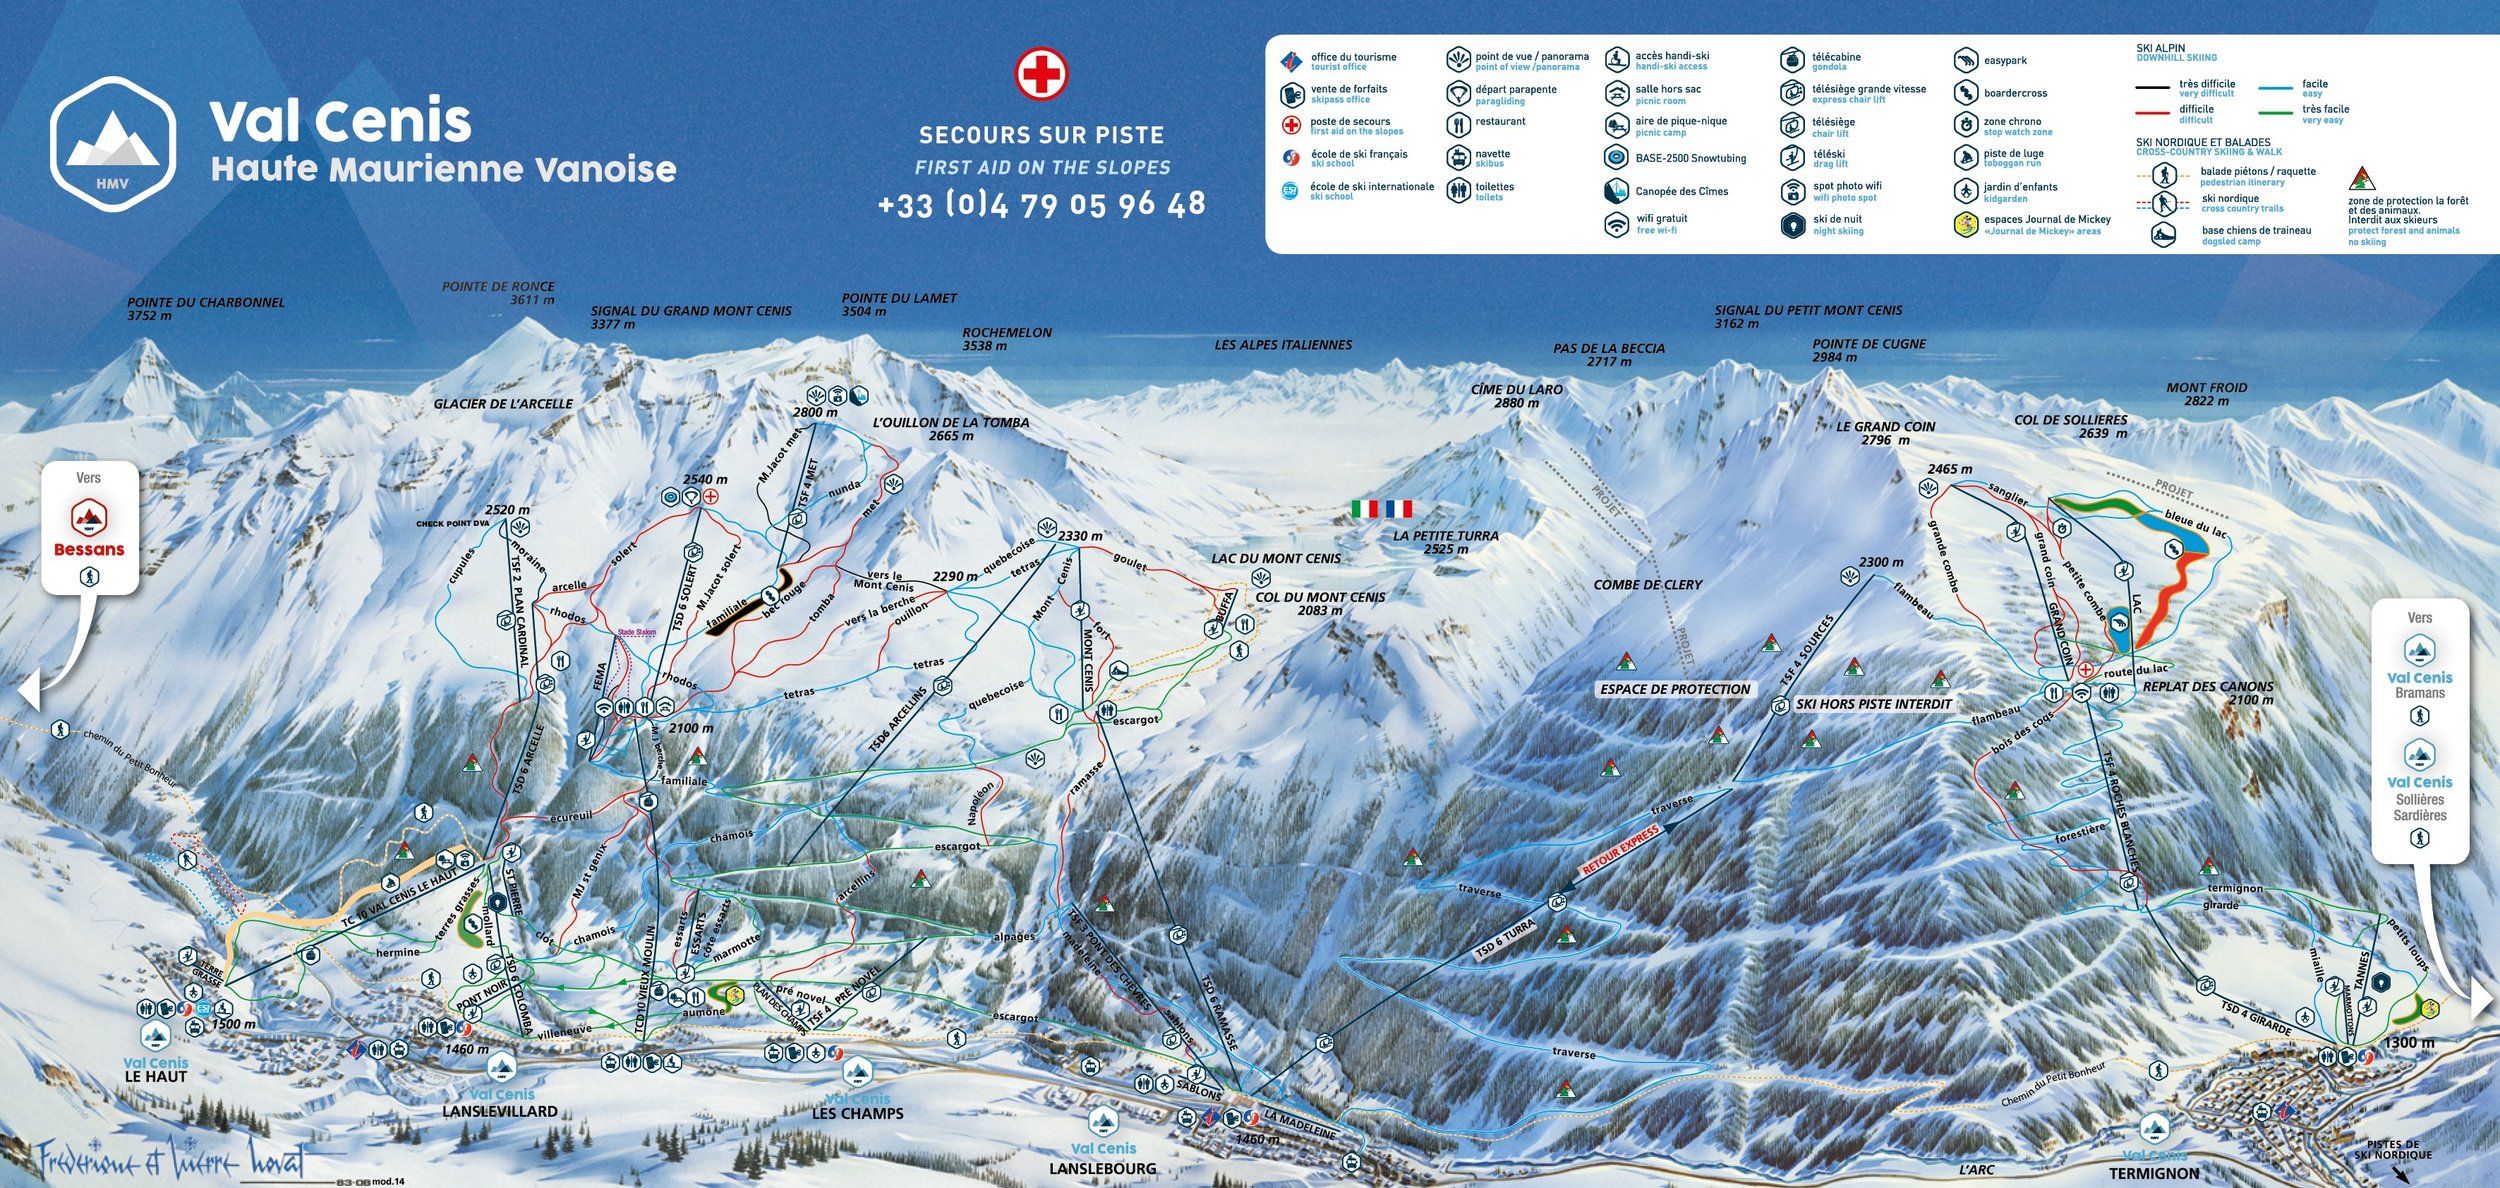 Pistenplan / Karte Skigebiet Val Cenis, Frankreich